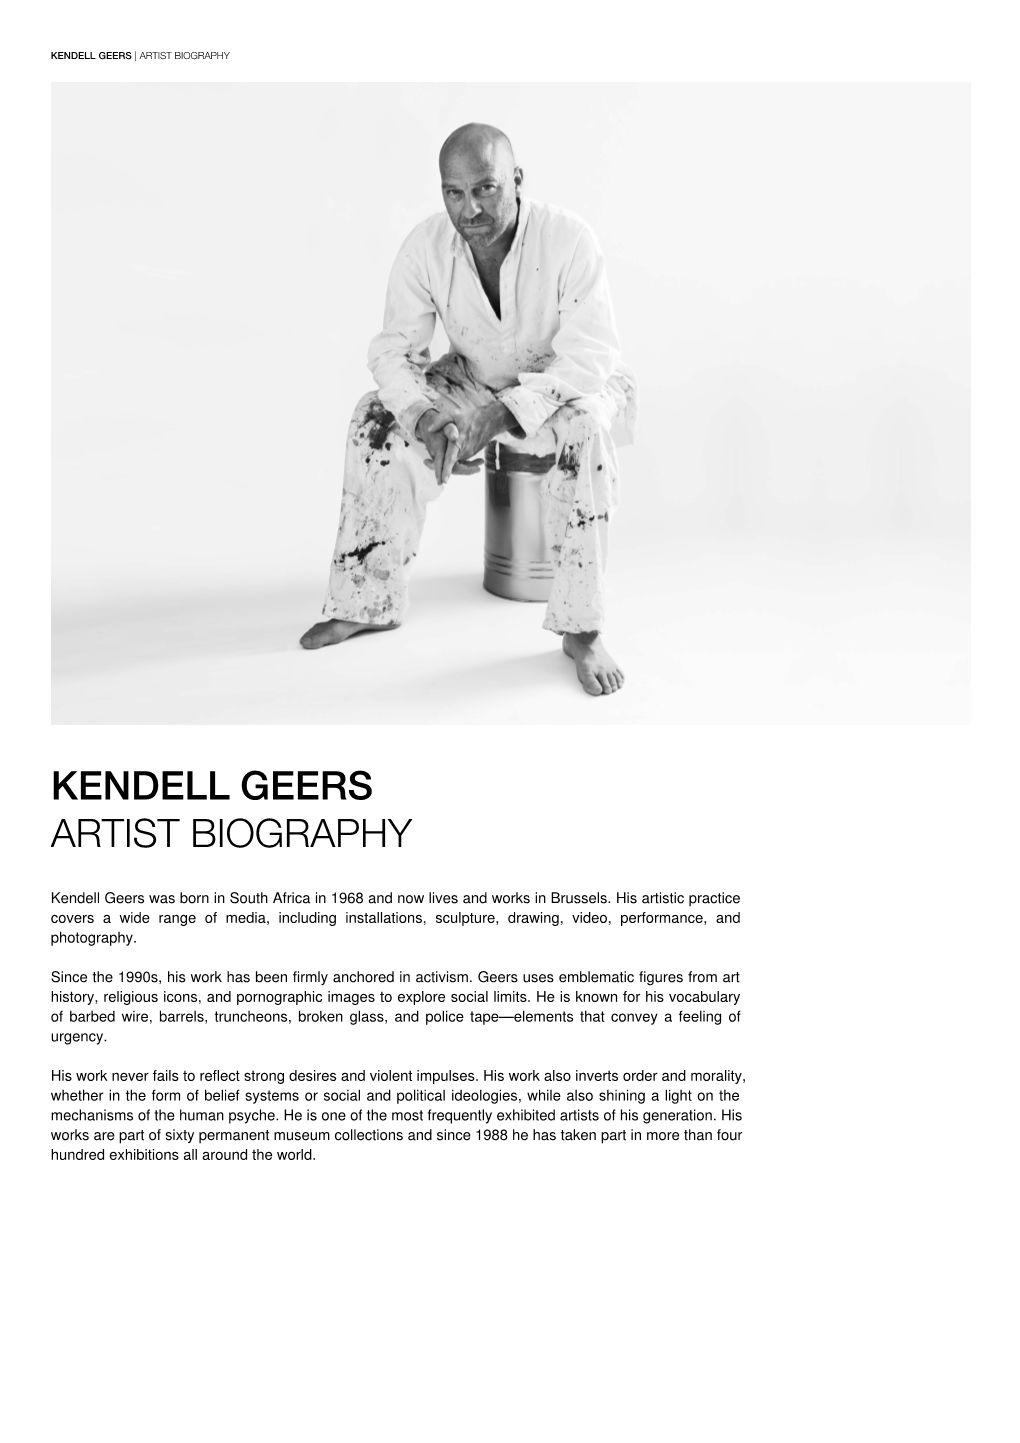 Kendell Geers Artist Biography